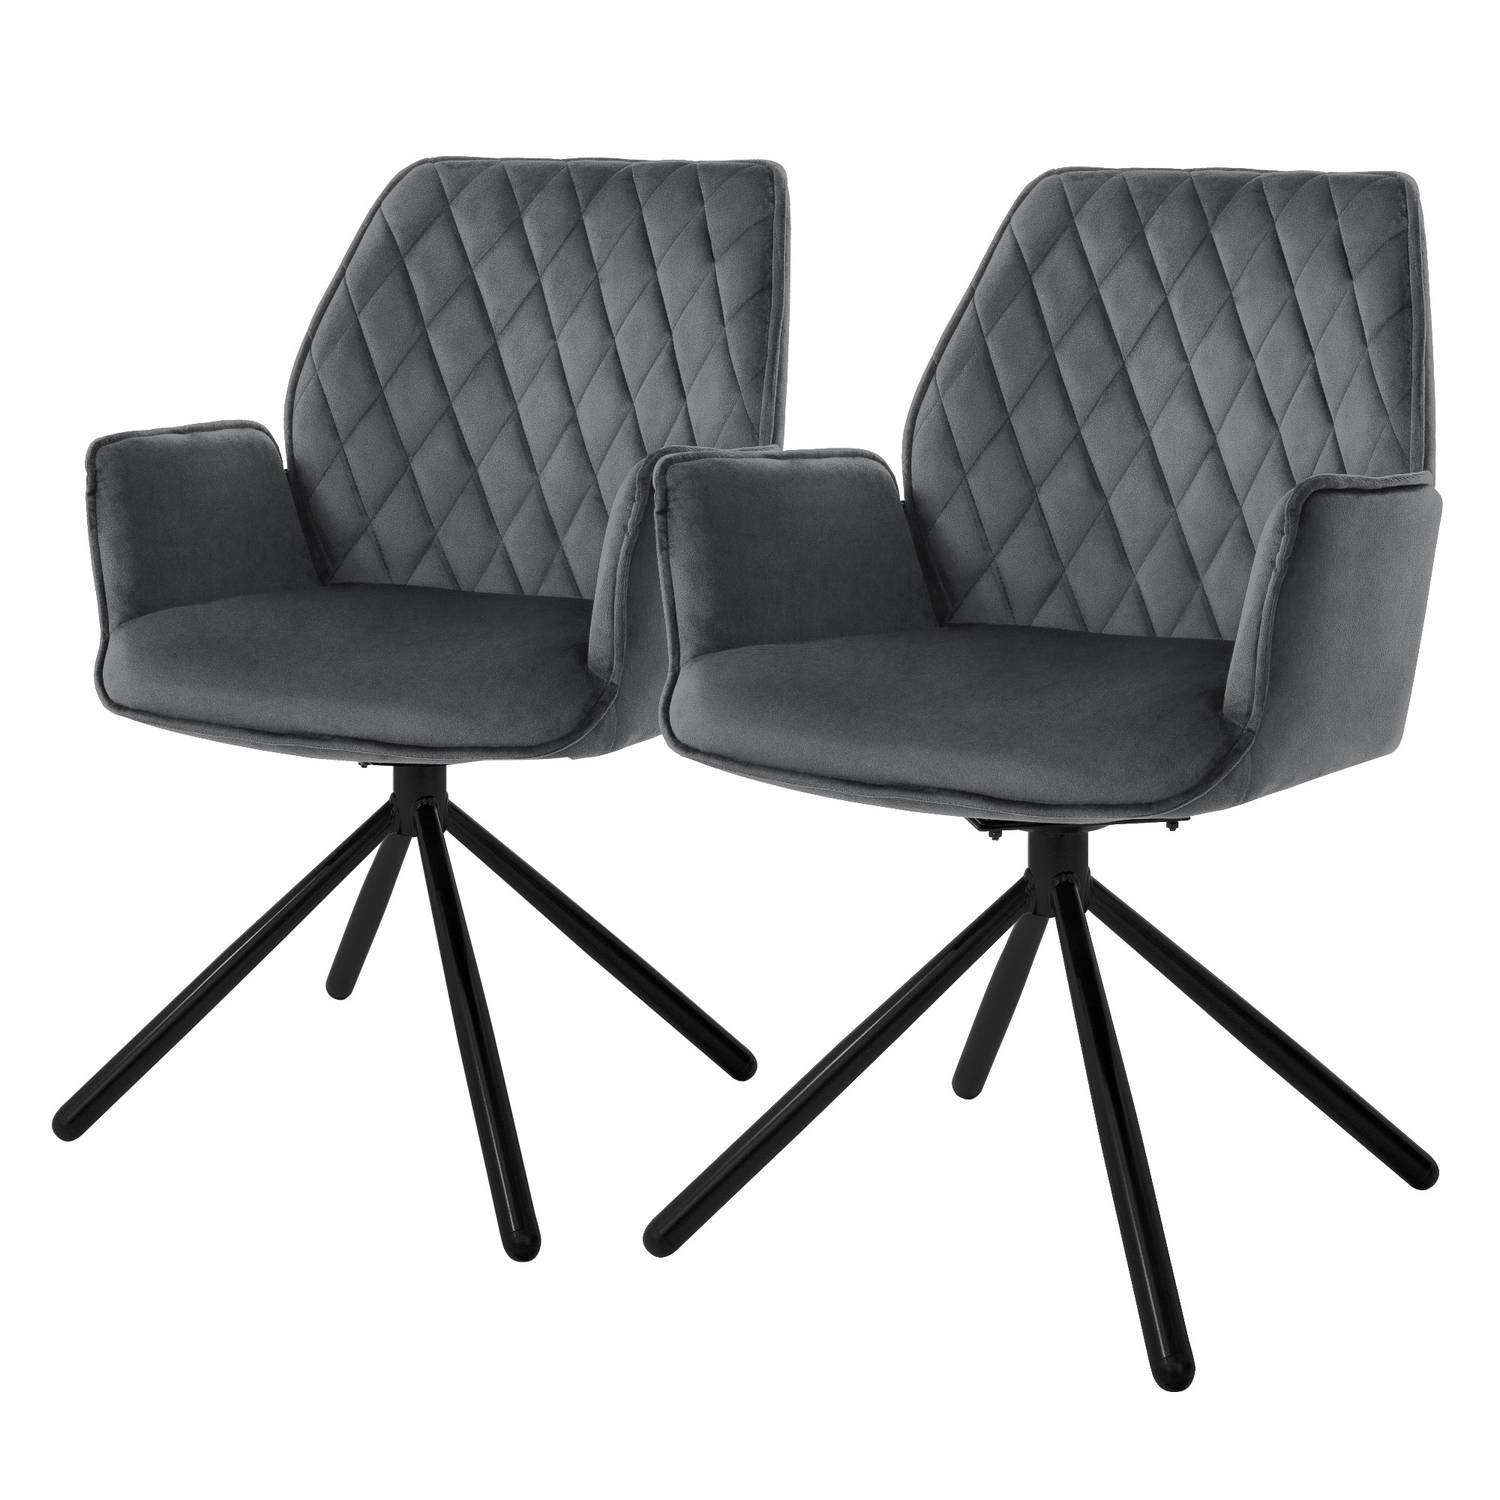 ML-Design eetkamerstoelen set van 2 fluweel antraciet, woonkamerstoel met armleuning en rugleuning, draaistoel, gestoffeerde stoel met metalen poten, ergonomische, keukenstoel loun